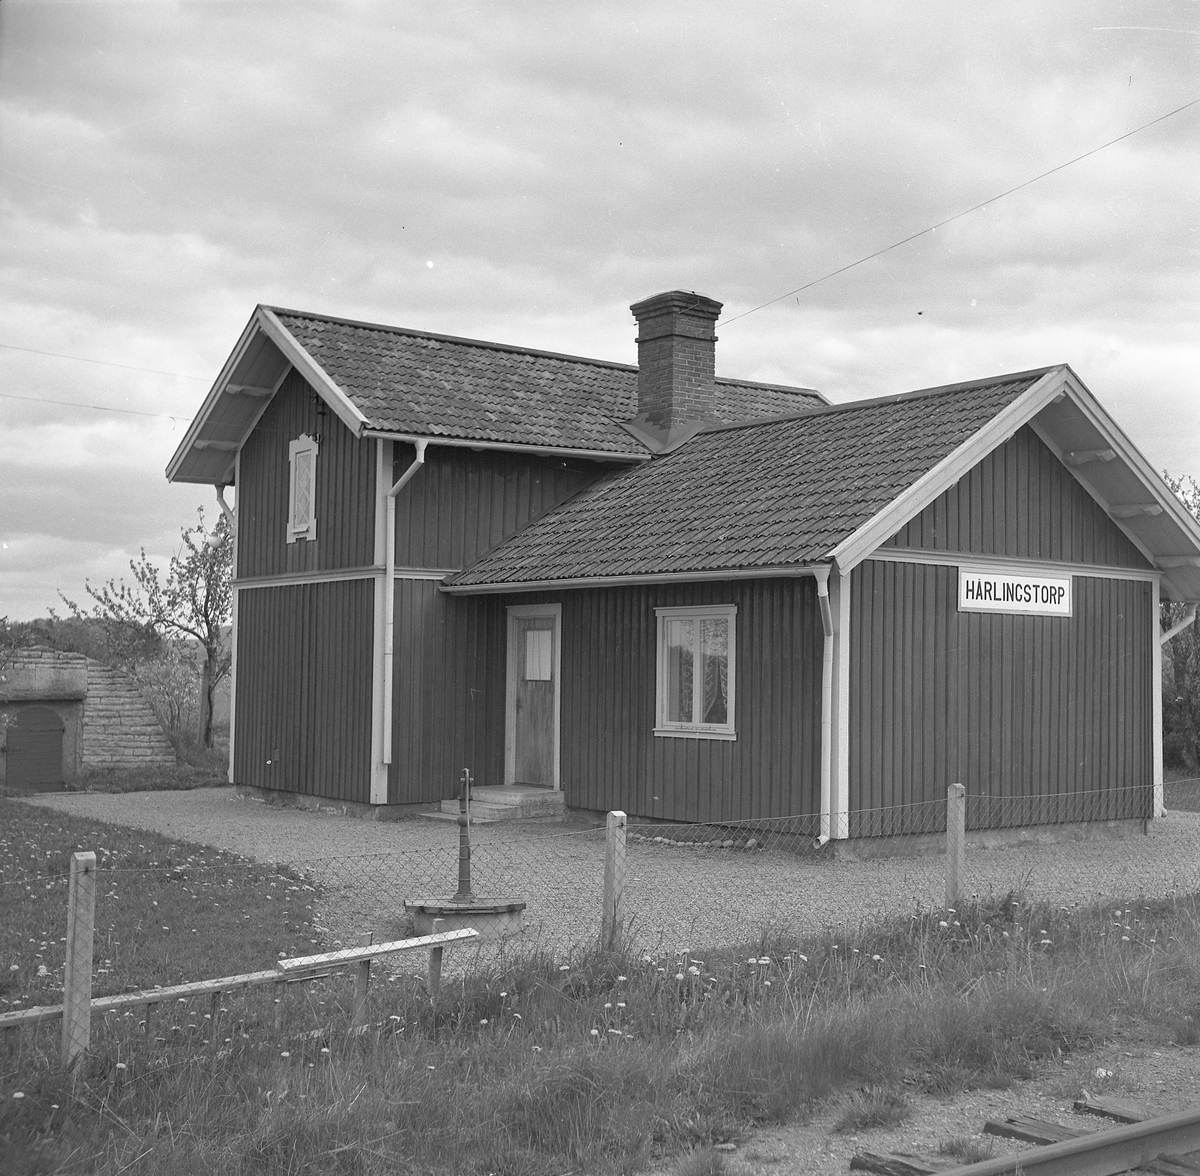 LSSJ , Lidköping - Skara - Stenstorps Järnväg
Håll- och lastplats. Bispår till Röde Mosse torvfabrik